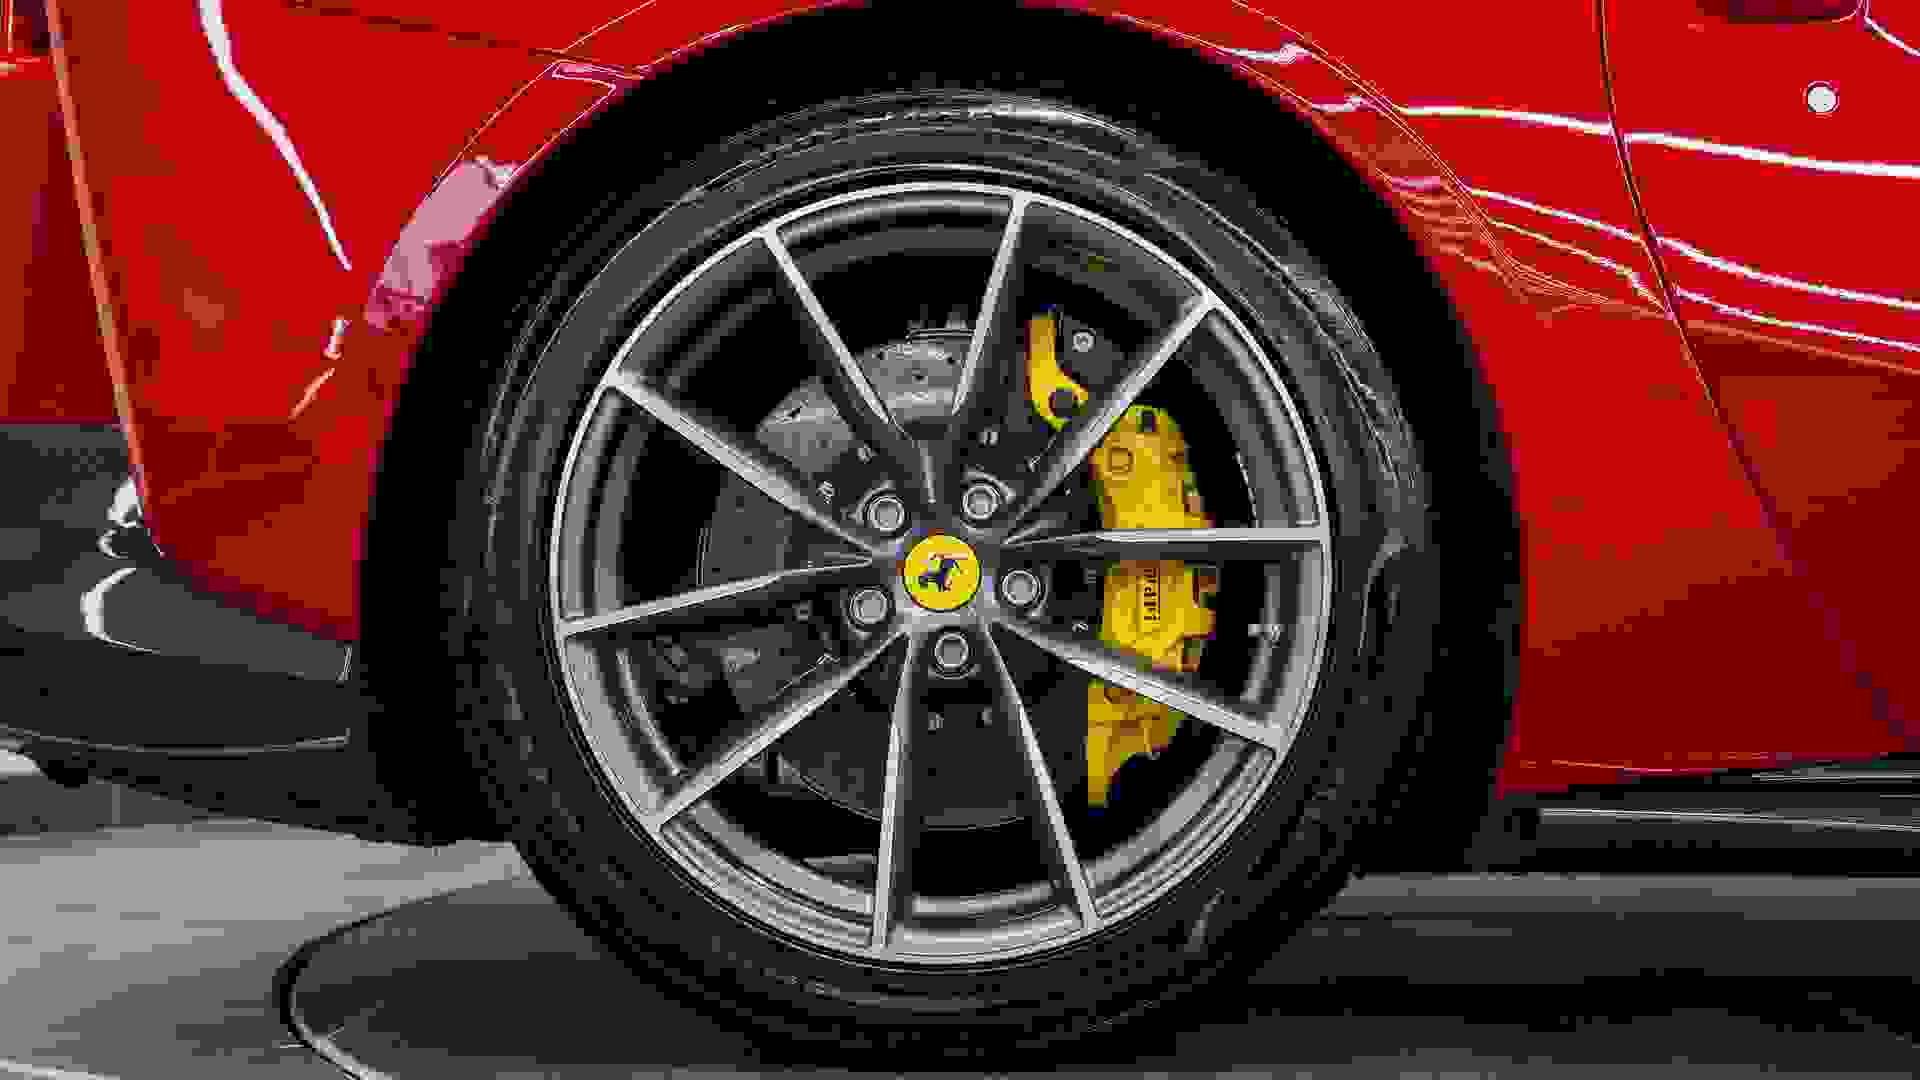 Ferrari 812 Photo 972b6a45-d65f-4e17-a48a-04bff1a0c641.jpg